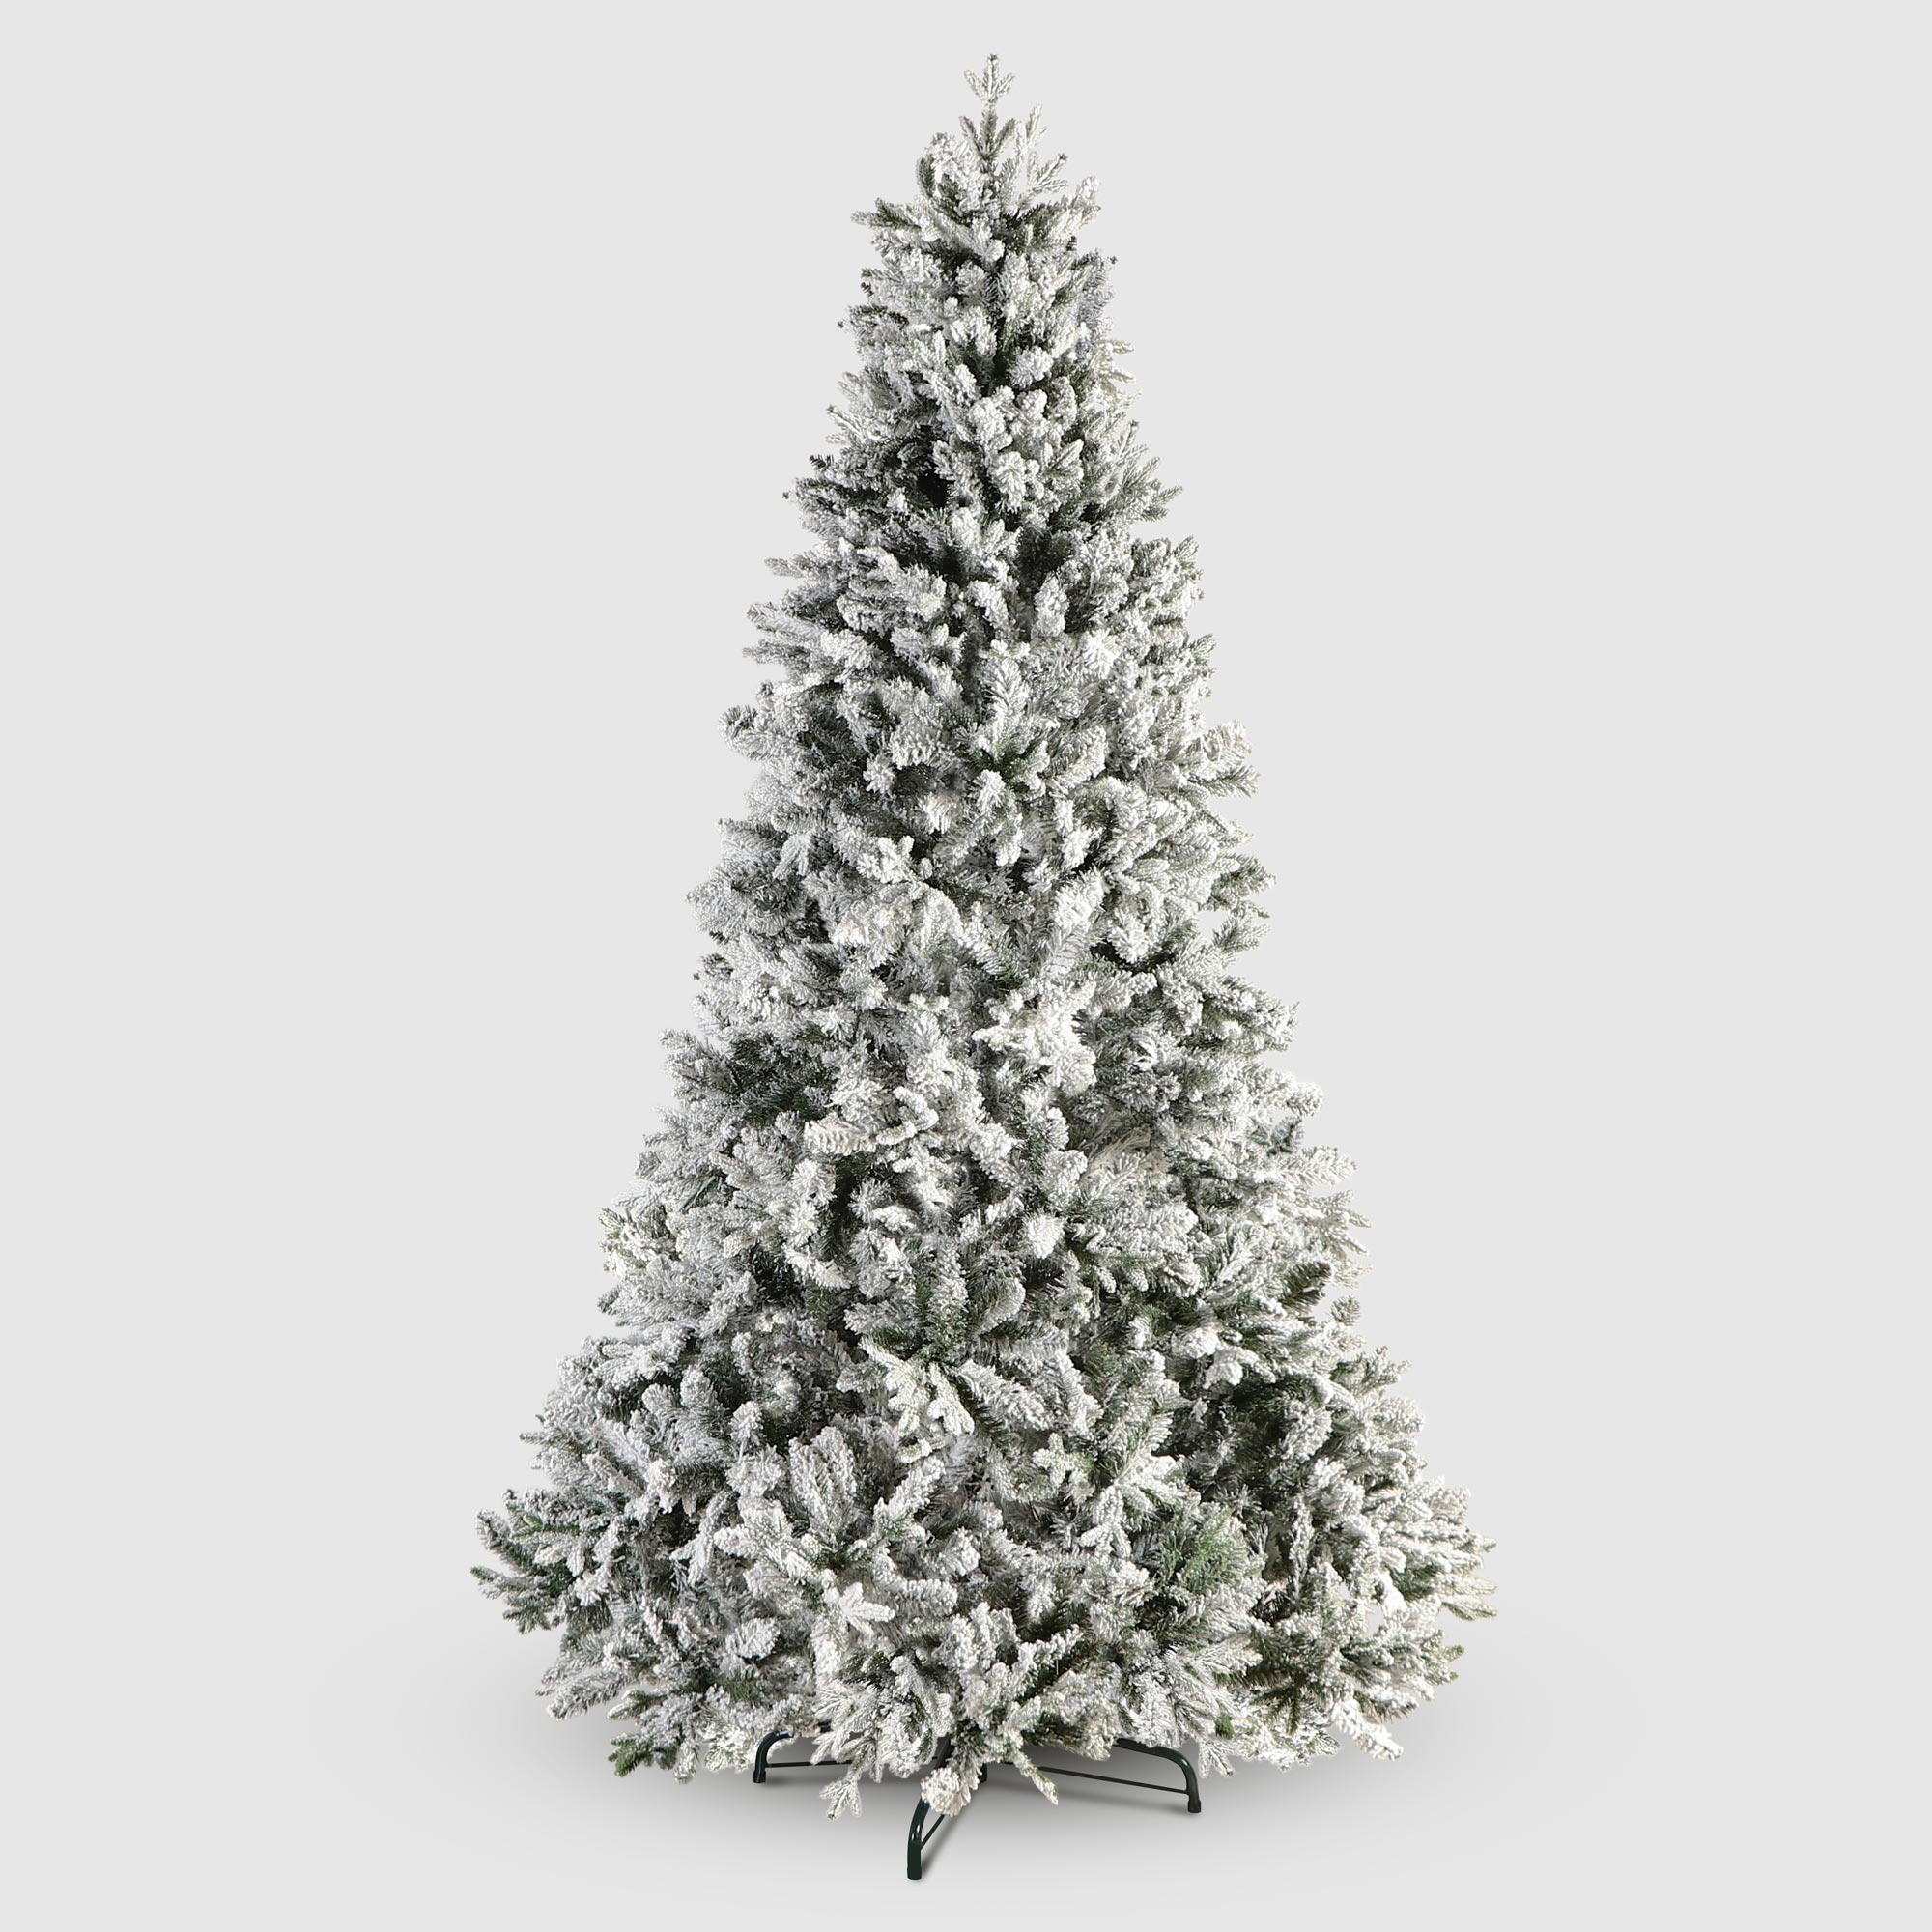 Ель новогодняя National tree Iceland fir флокированная 225 см